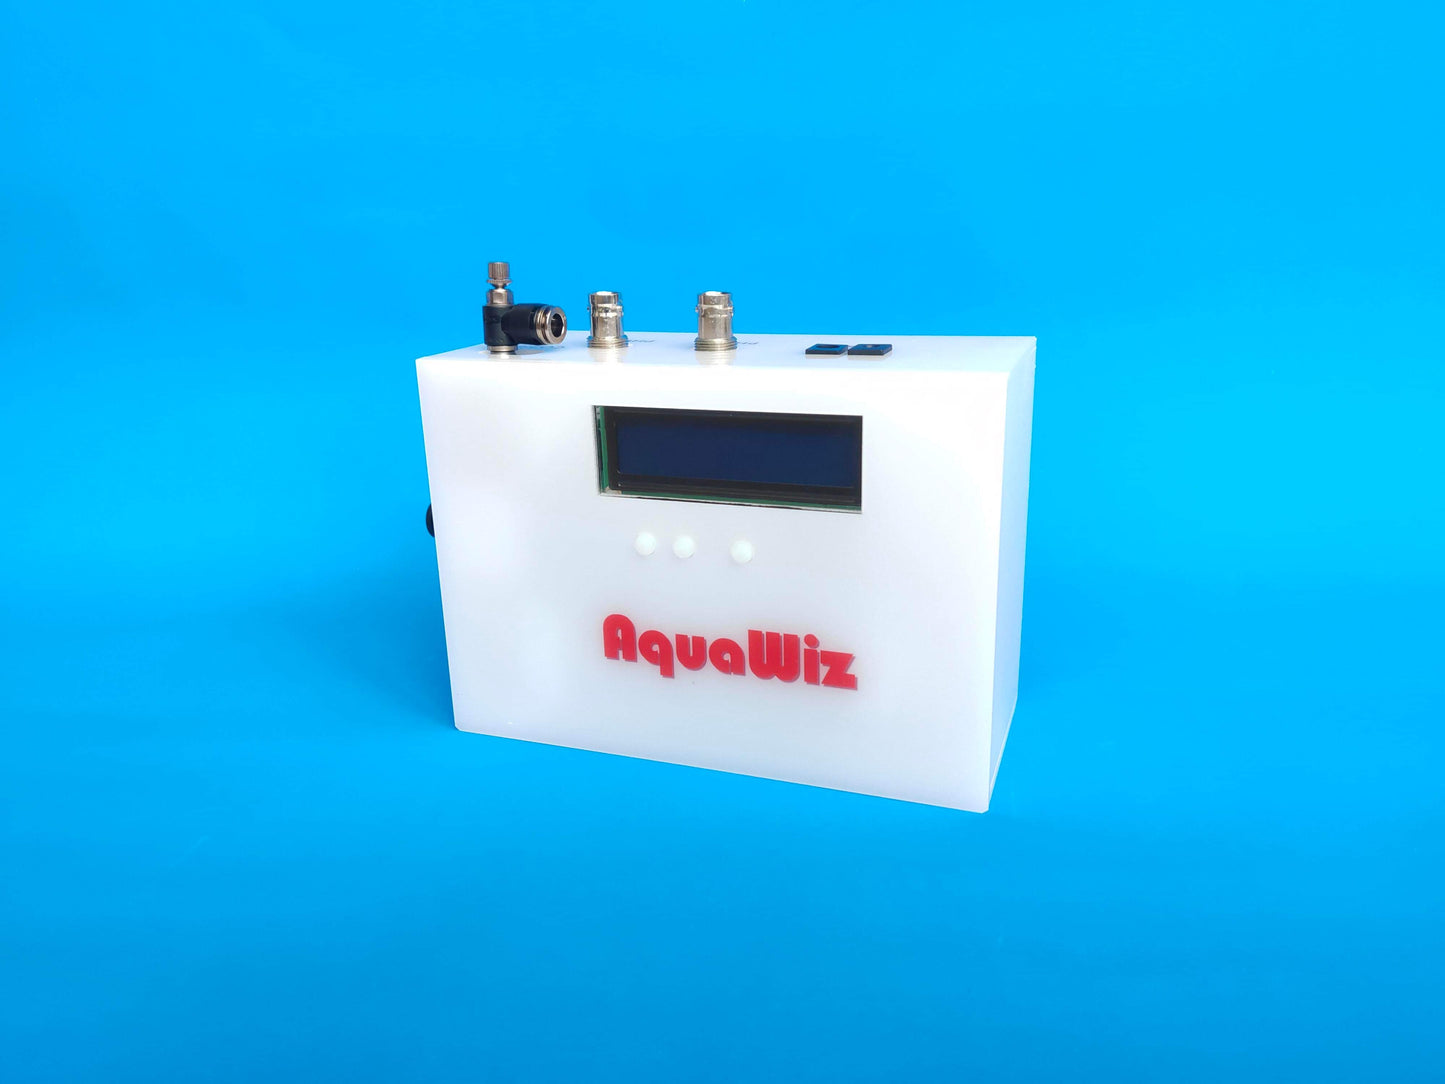 AquaWiz CRA Calcium Reactor Controller